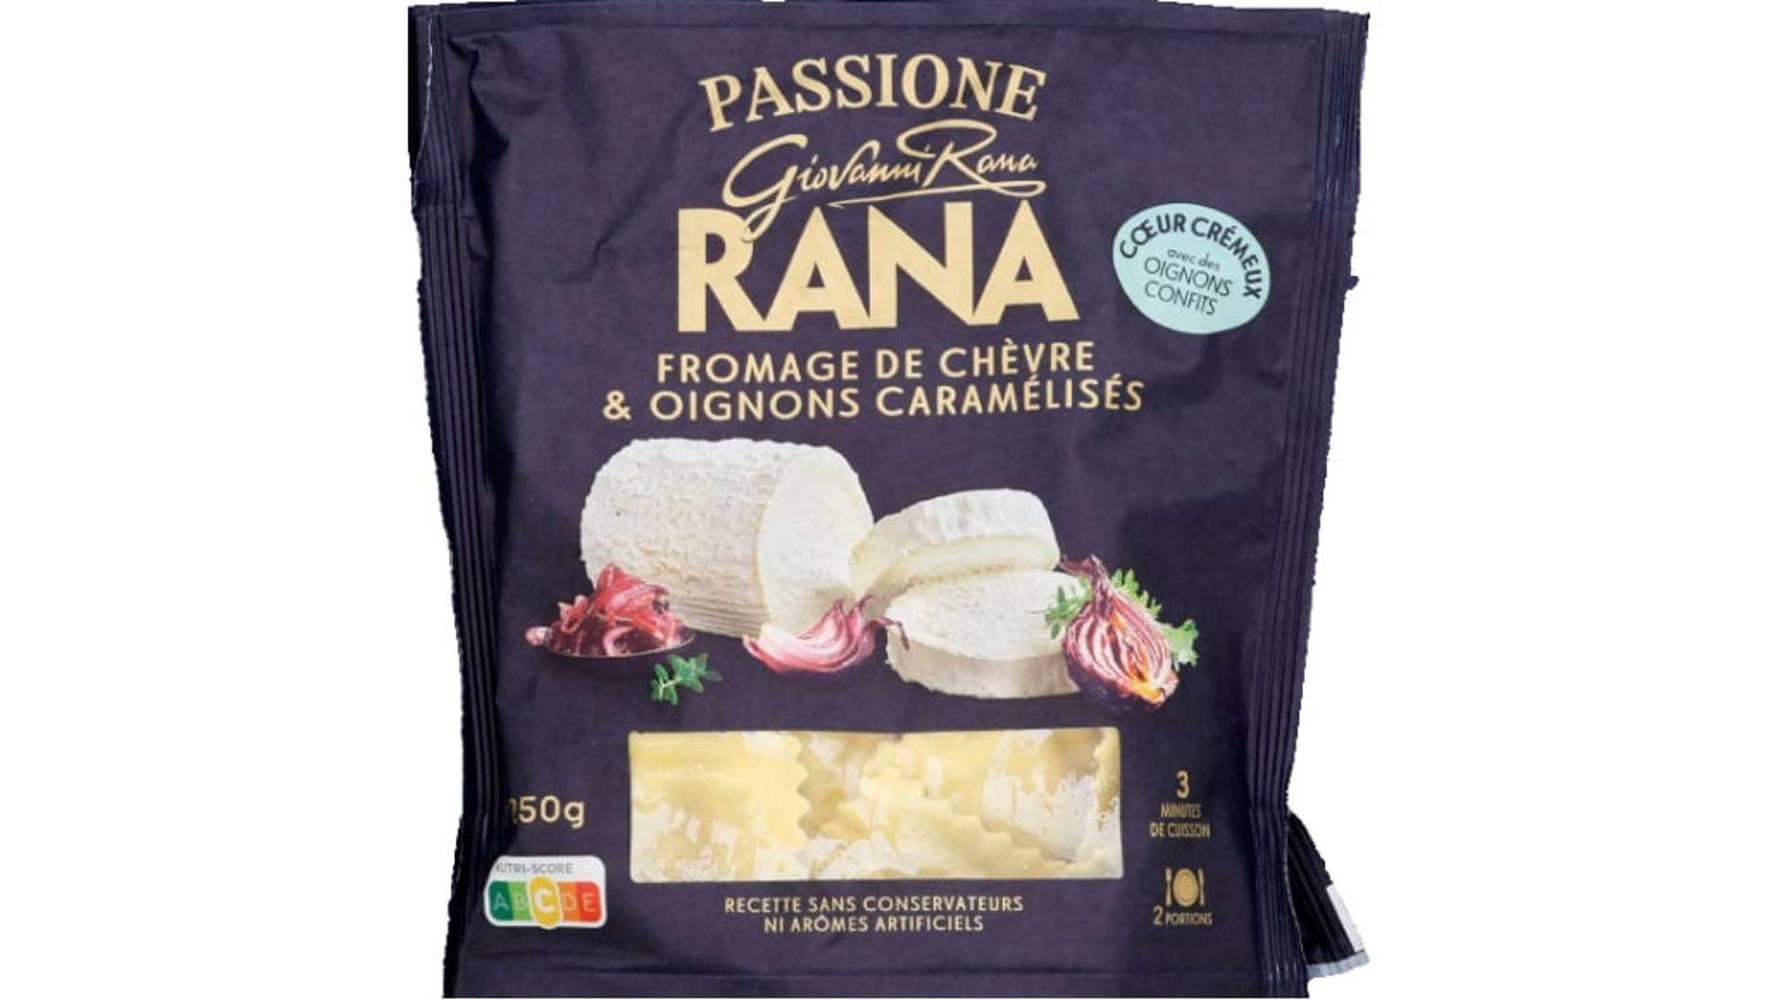 Rana - Pâtes fraîches ravioli fromage de chèvre et oignons de tropea caramélisés